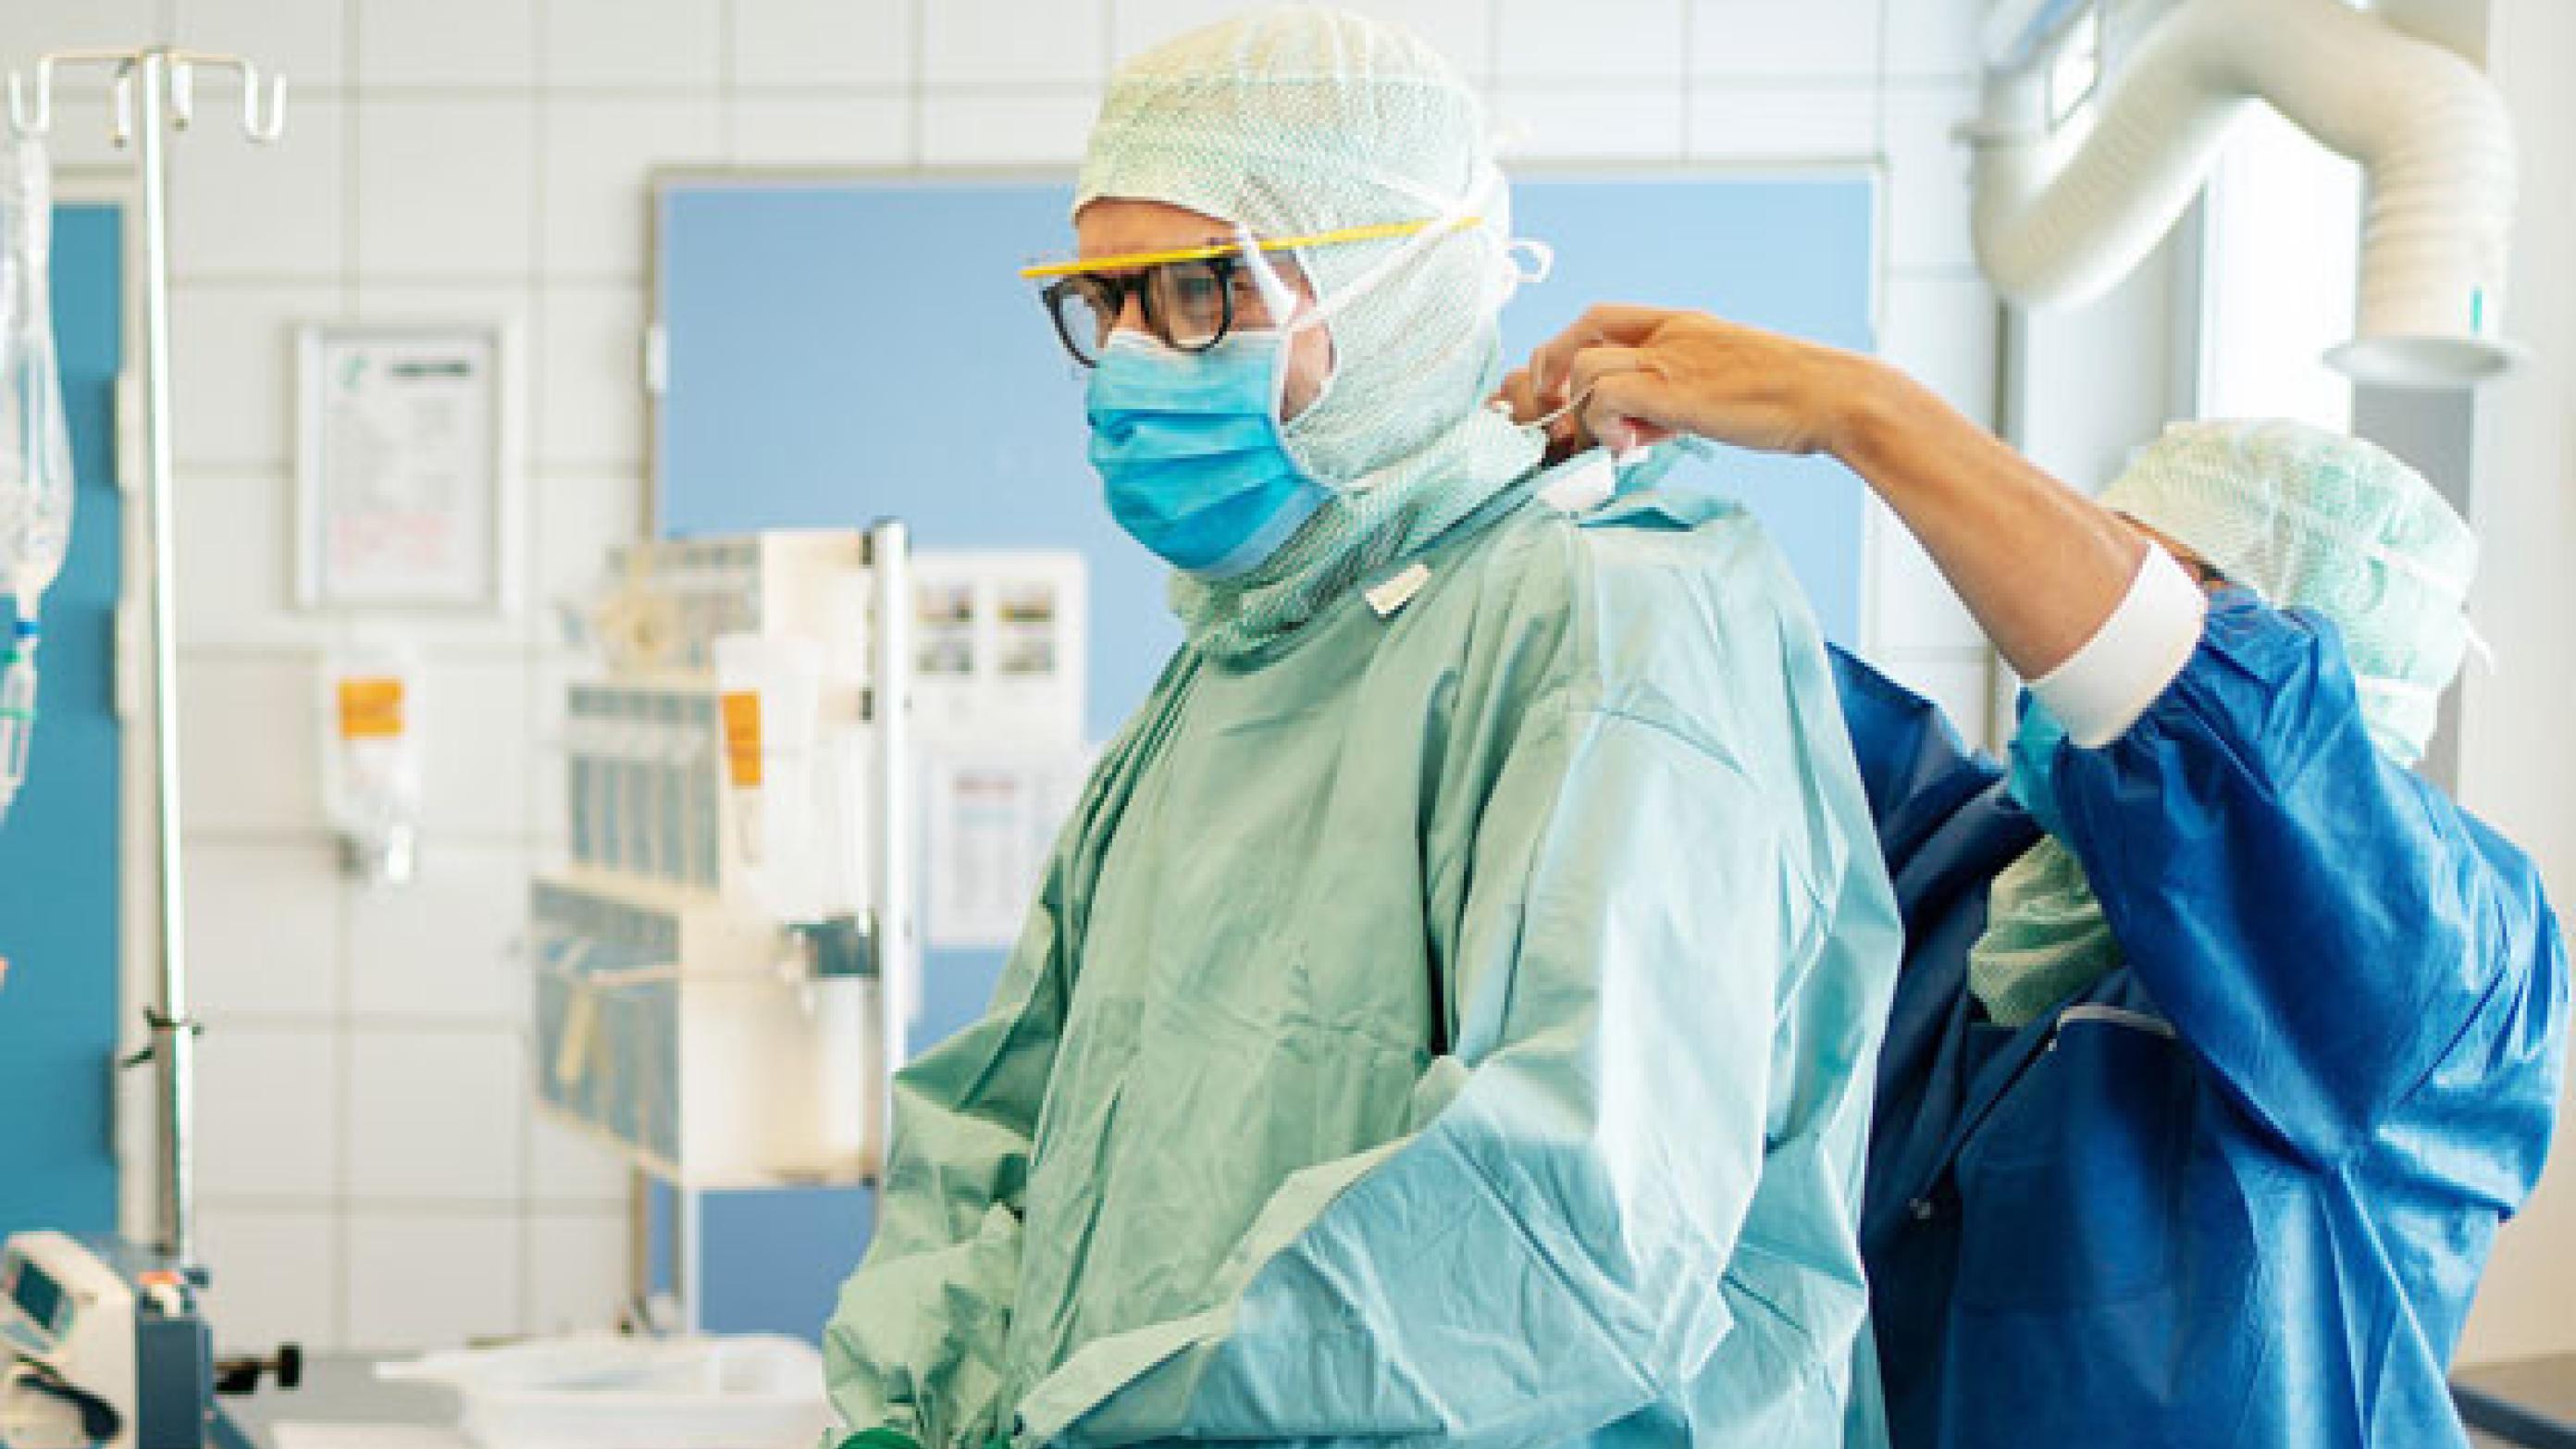 Akutte patienter risikerer at måtte vente på operation i en tid med sygeplejerskemangel og pukkelafvikling. Arkivfoto: Martin Dam Kristensen